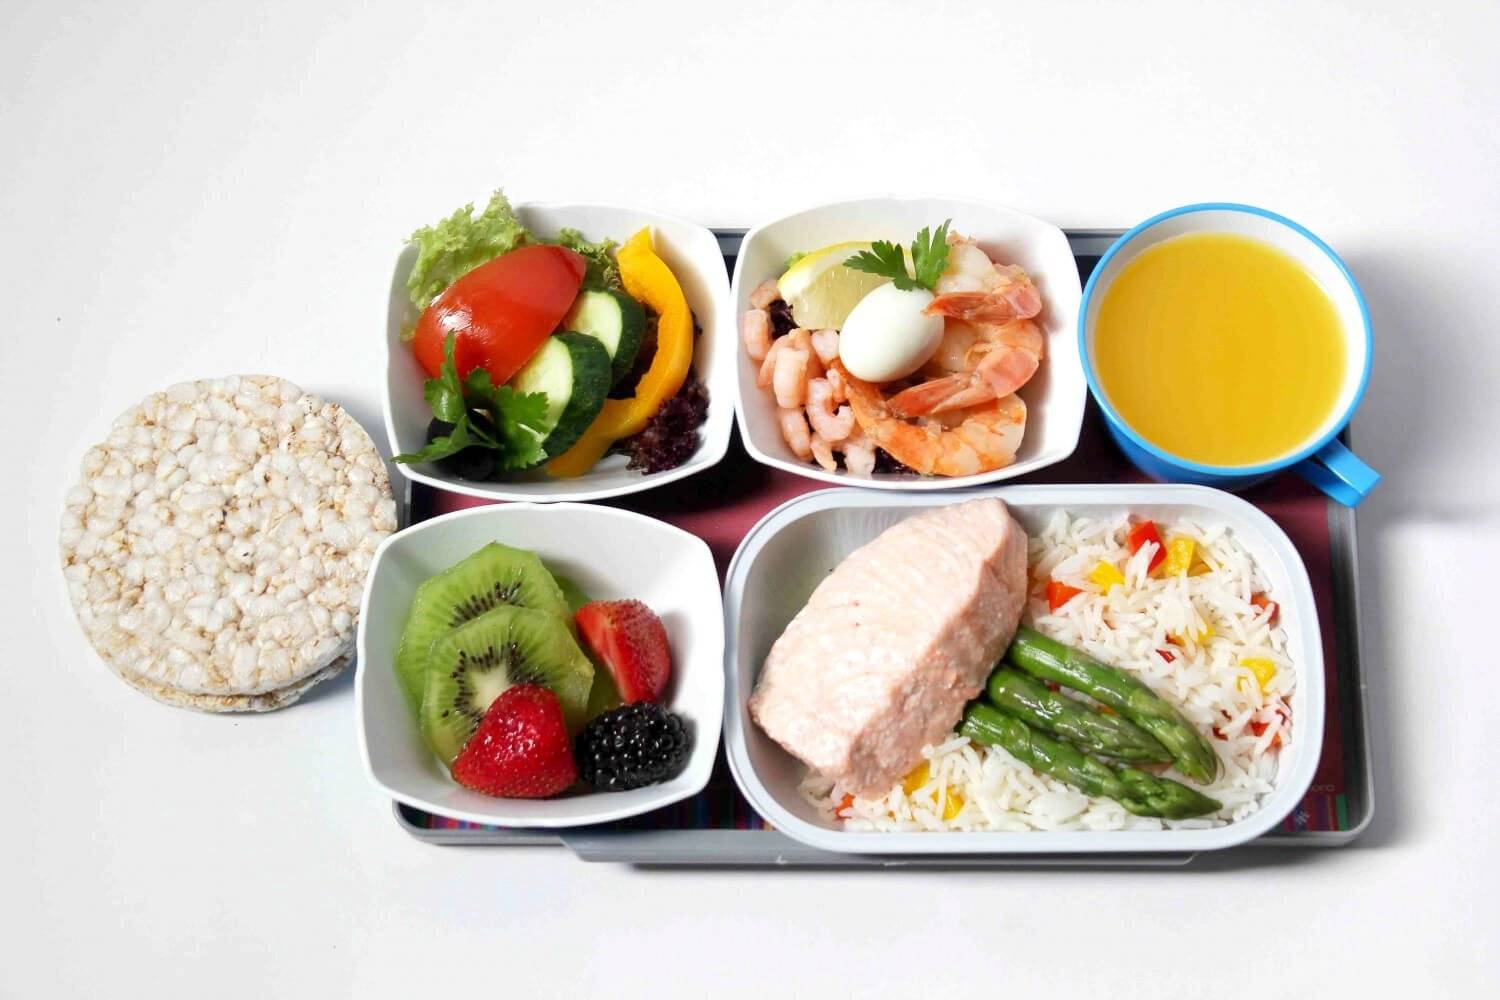 Обед при правильном питании: основная концепция, соотношение белков, жиров и углеводов, что нужно есть, варианты блюд и рецепты